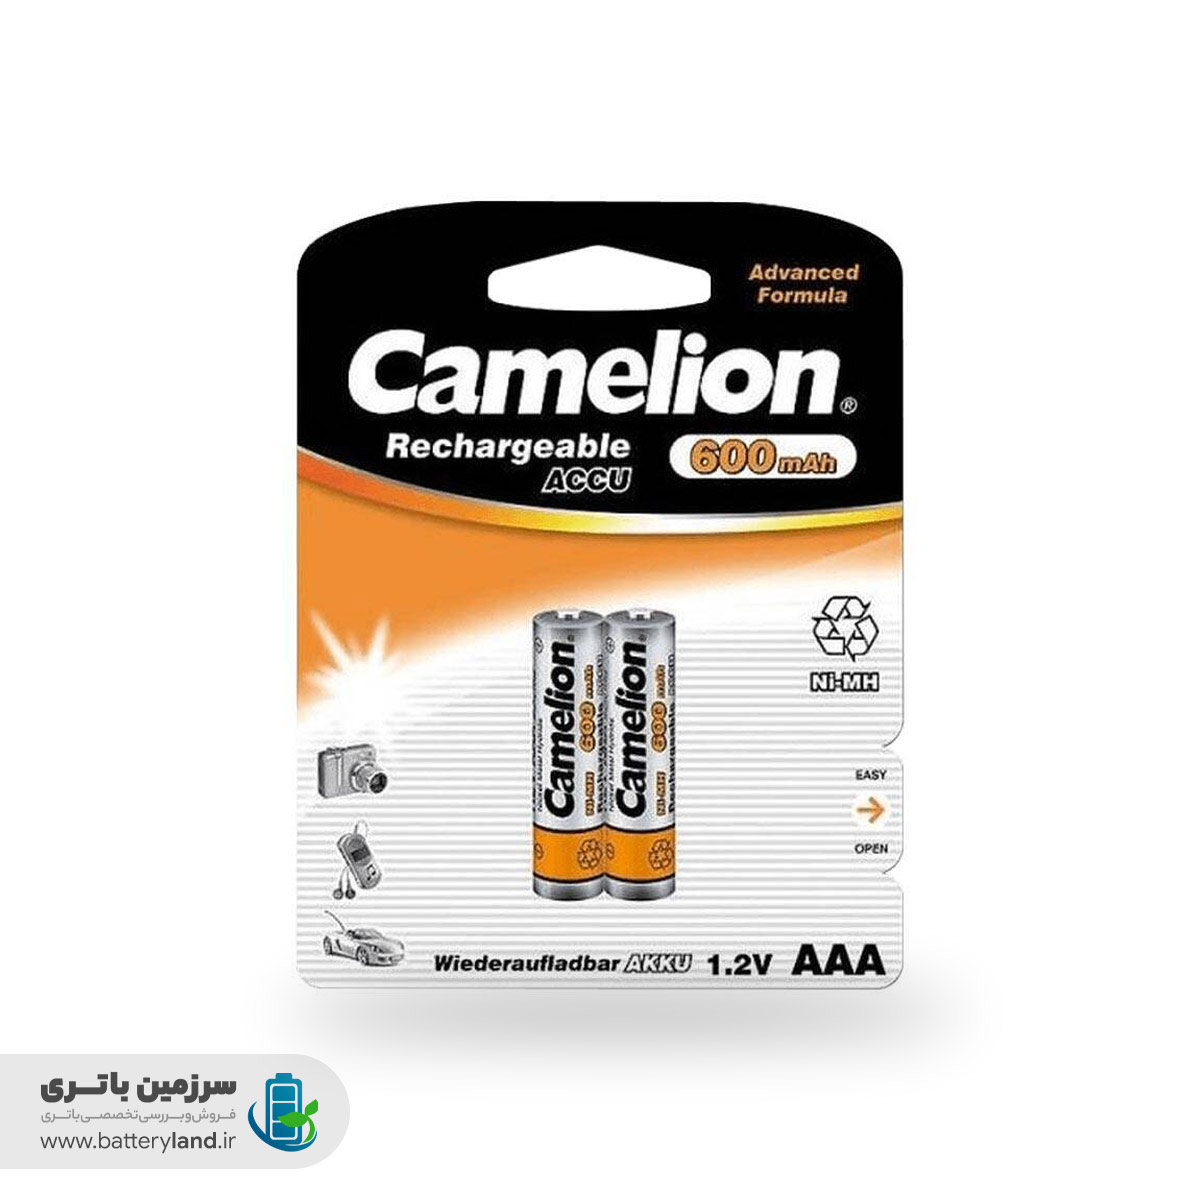 باطری شارژی نیم قلمی camelion-600